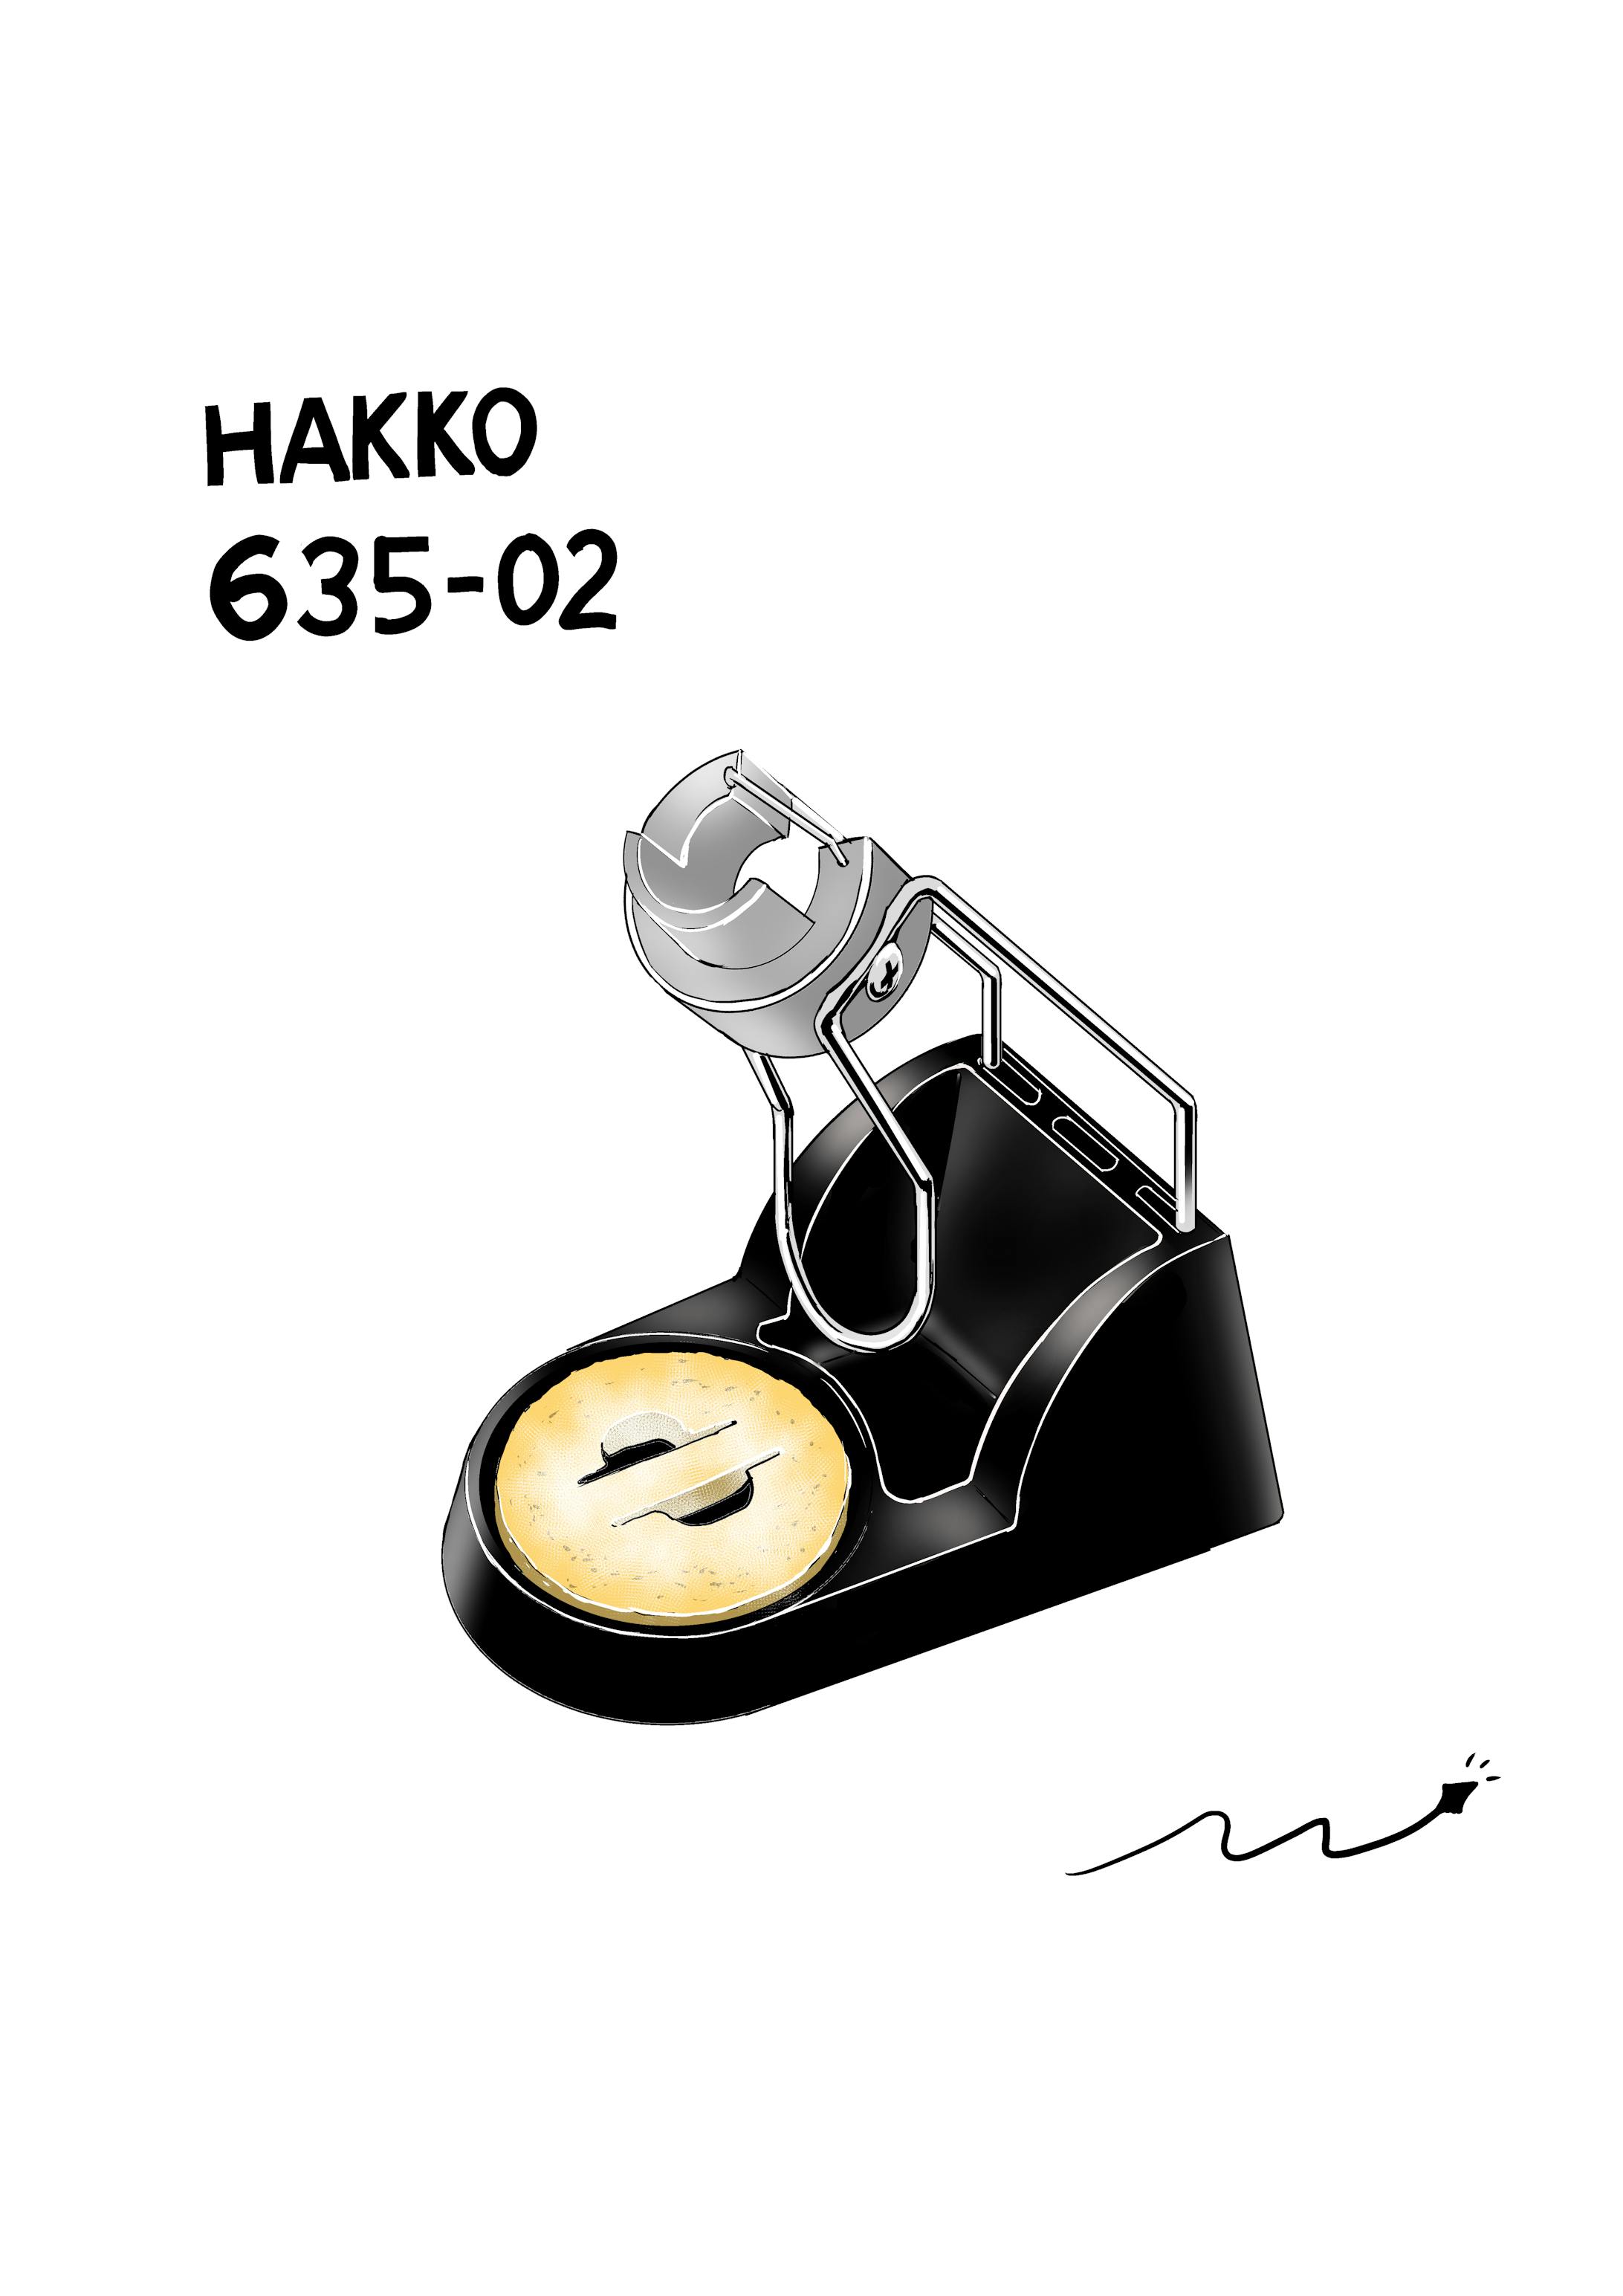 こて台　HAKKO 635-02-1